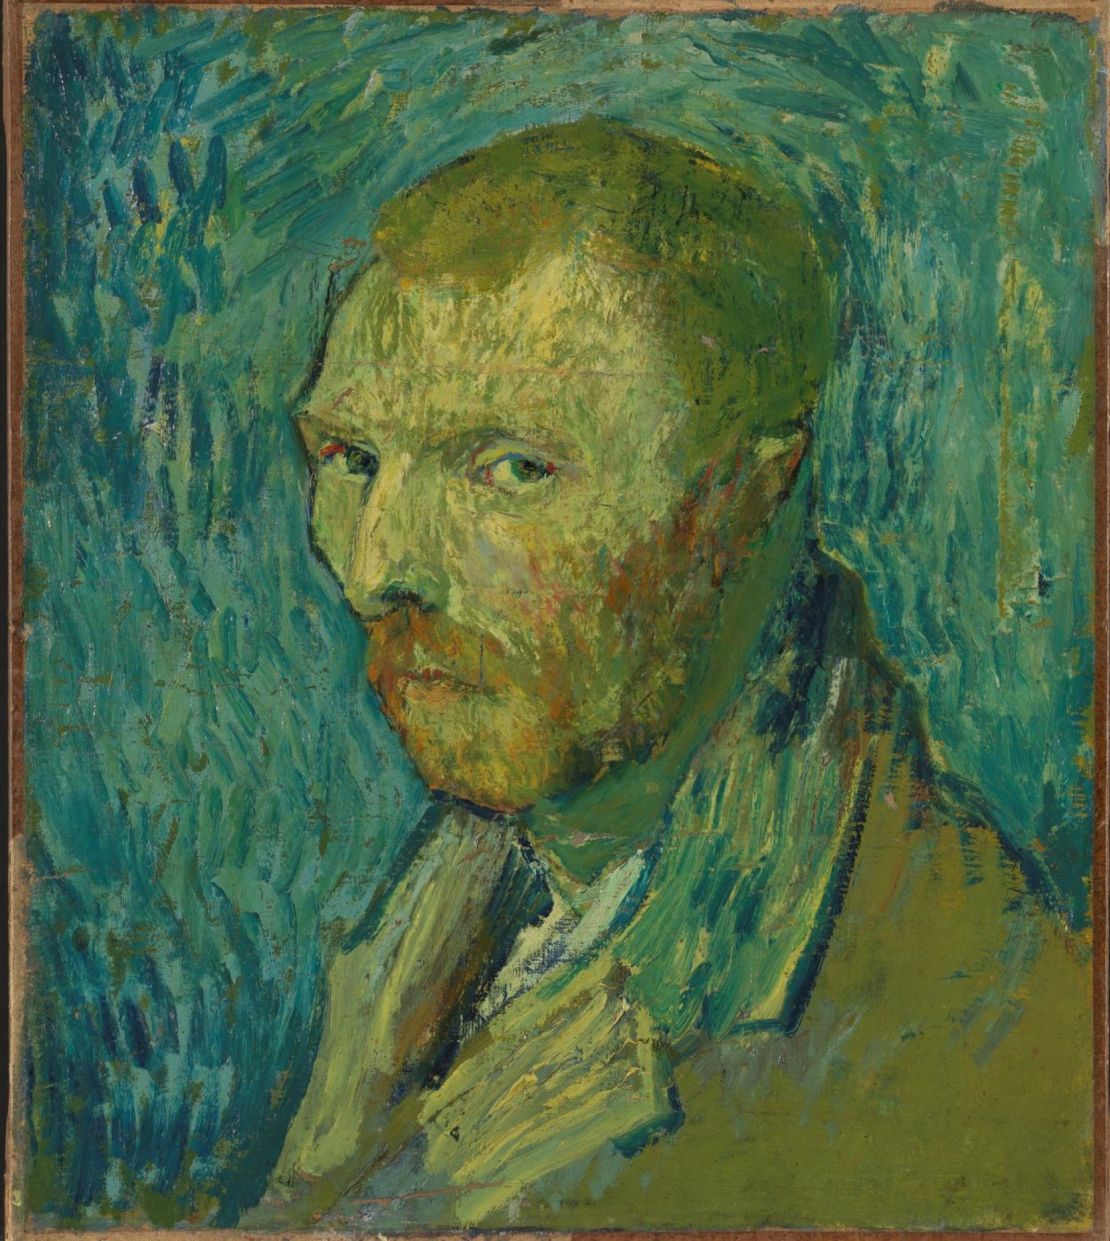 Disputed Van Gogh painting is genuine, says new study